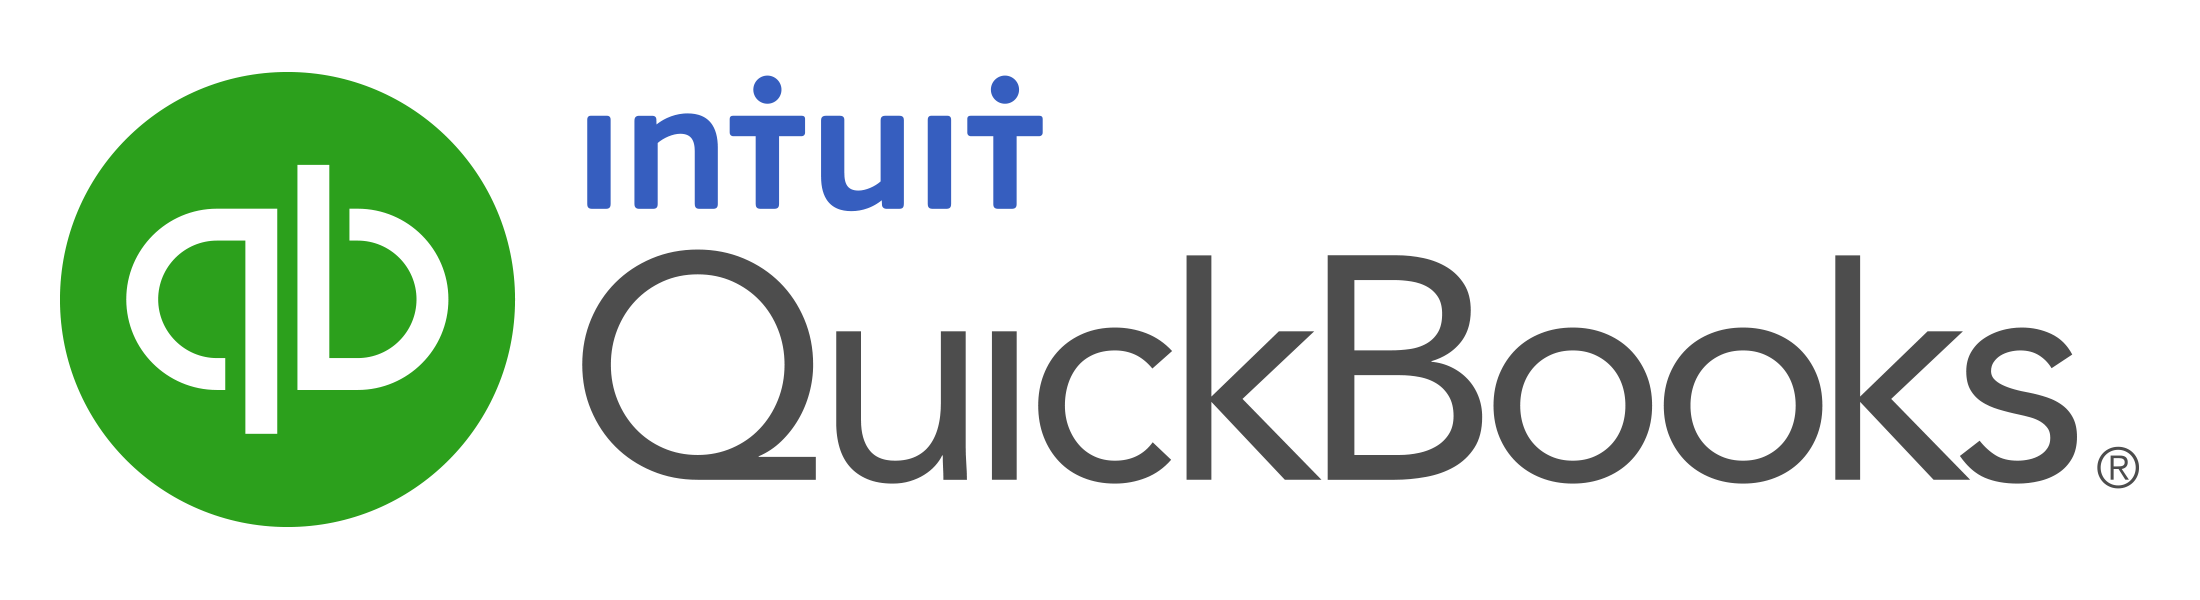 Intuit QuickBooks image